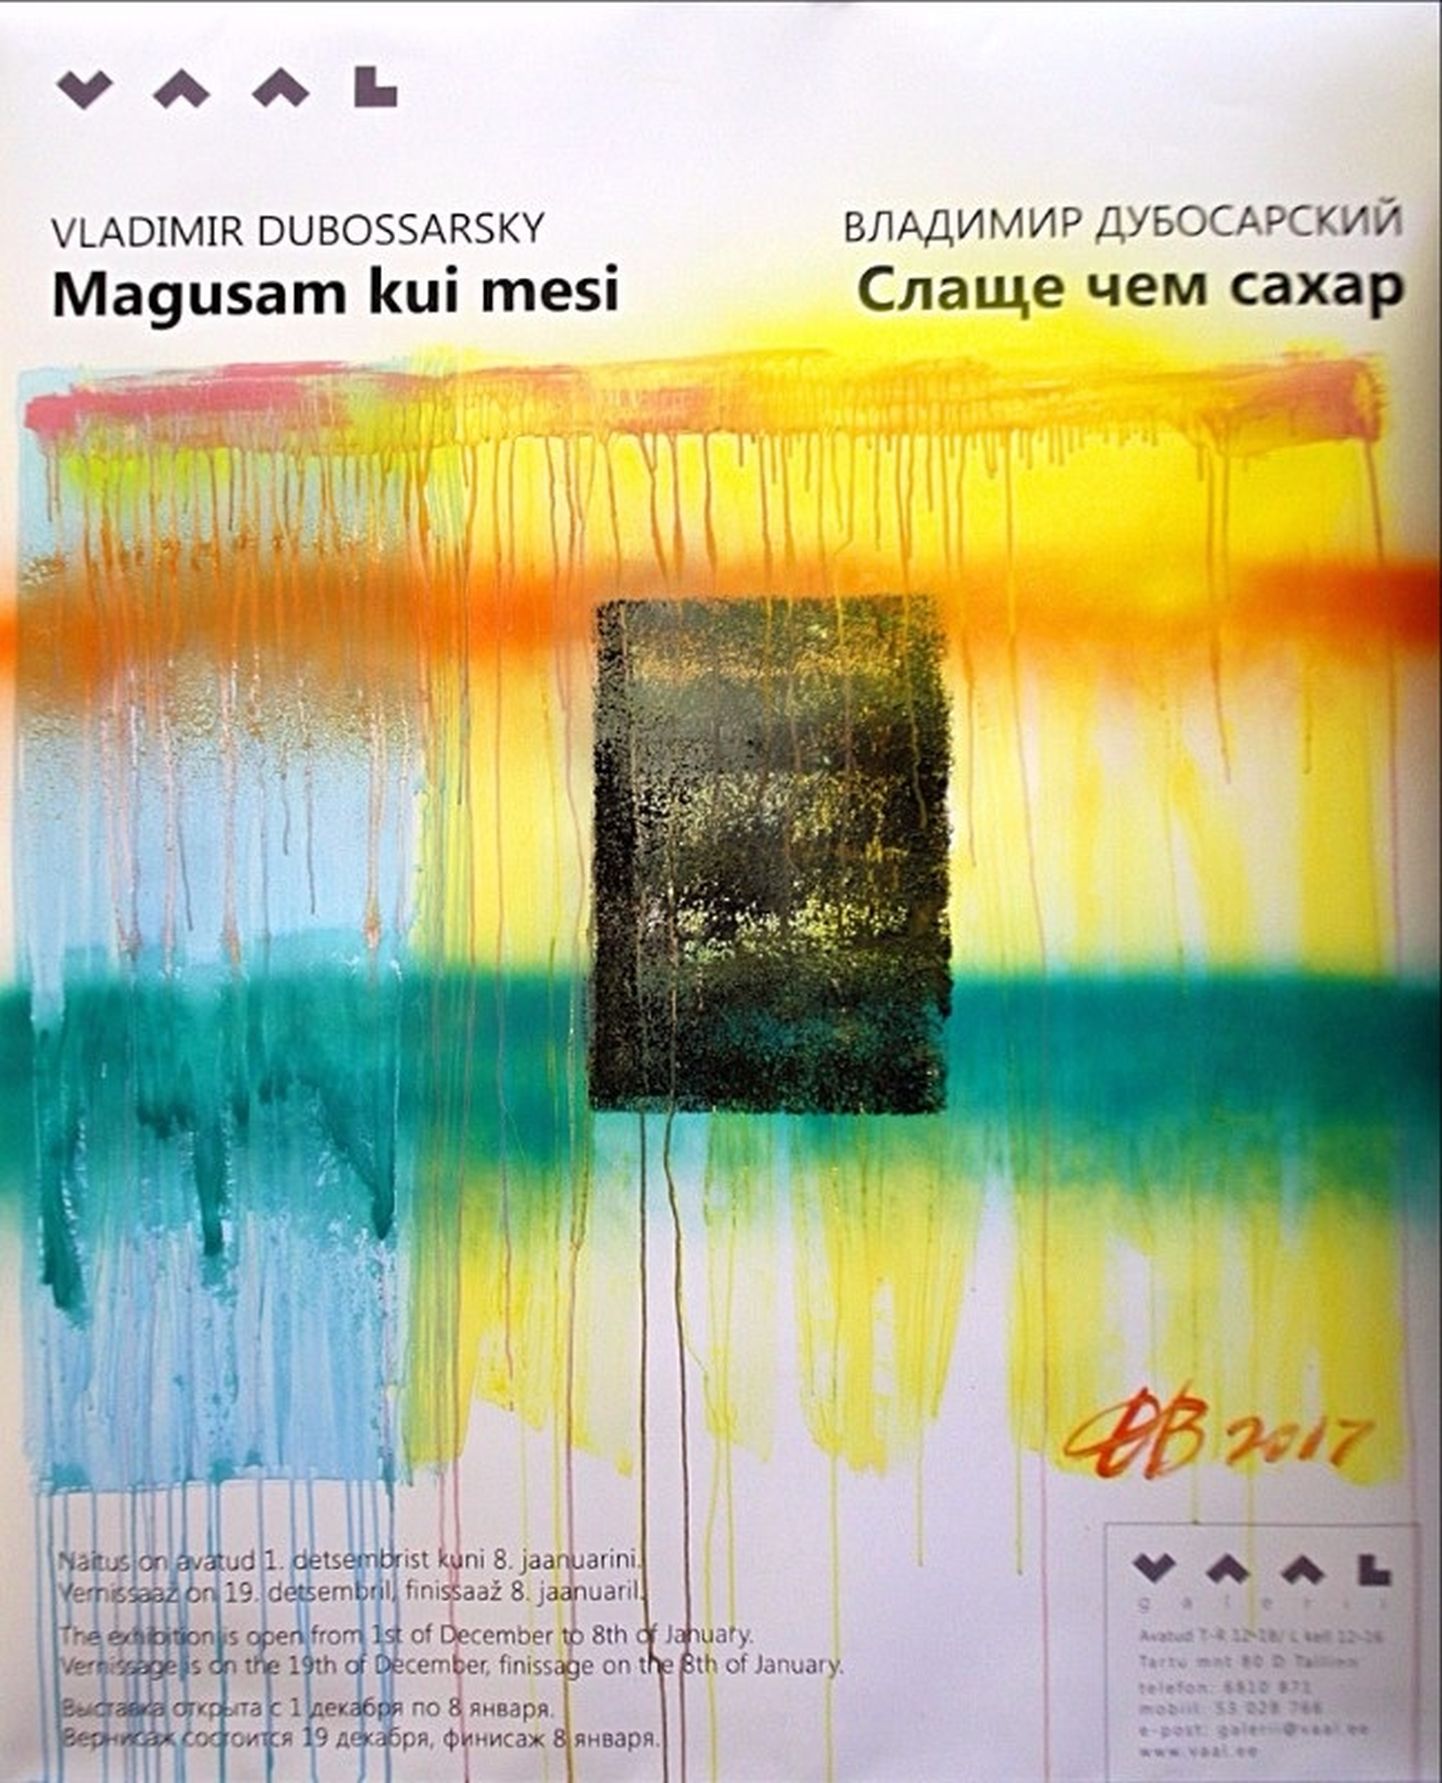 Näitus «Magusam kui mesi» Vaal galeriis on esimene Vladimir Dubossarsky tööde väljapanek Eestis.